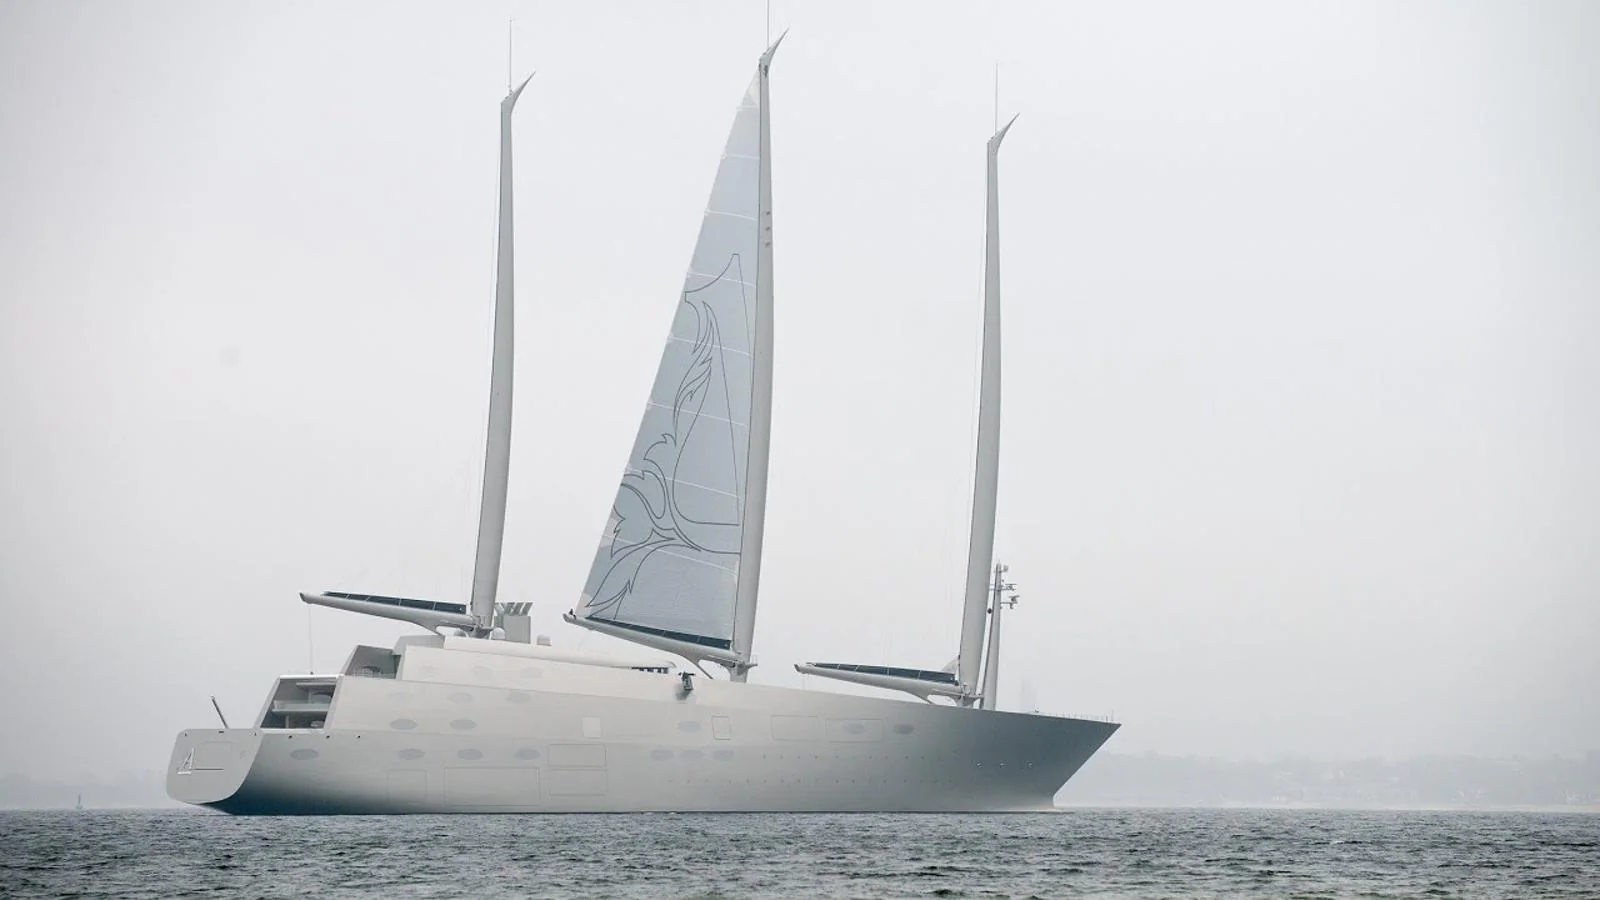 Sailing Yacht A. Este velero alcanza una velocidad de 22 nudos y está construido con fibra de carbono, acero y un compuesto ligero de materiales.  Tiene capacidad para más de 20 personas.